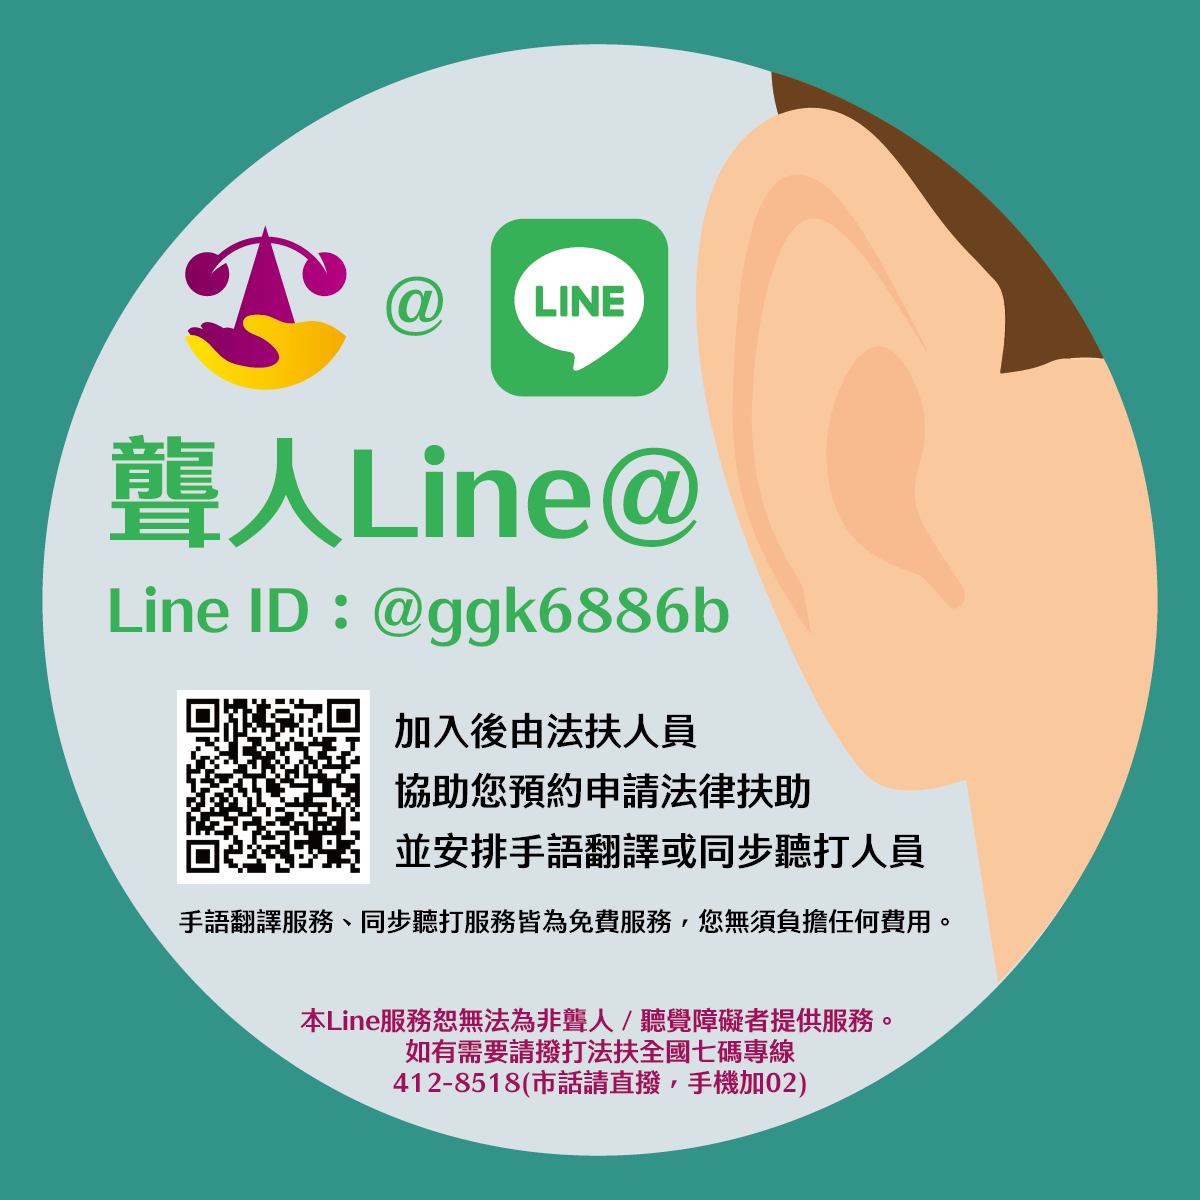 聾人Line@ Line ID:@ggk6886b QRcode，加入後由法扶人員協助您預約申請法律扶助，並安排手語翻譯或同步聽打人員。手語翻譯服務、同步聽打服務皆為免費服務，您無須負擔任何費用。本Line服務恕無法為非聾人/聽覺障礙者提供服務。如有需要請撥打法扶全國七碼專線412-8518(市話請直撥，手機加02)